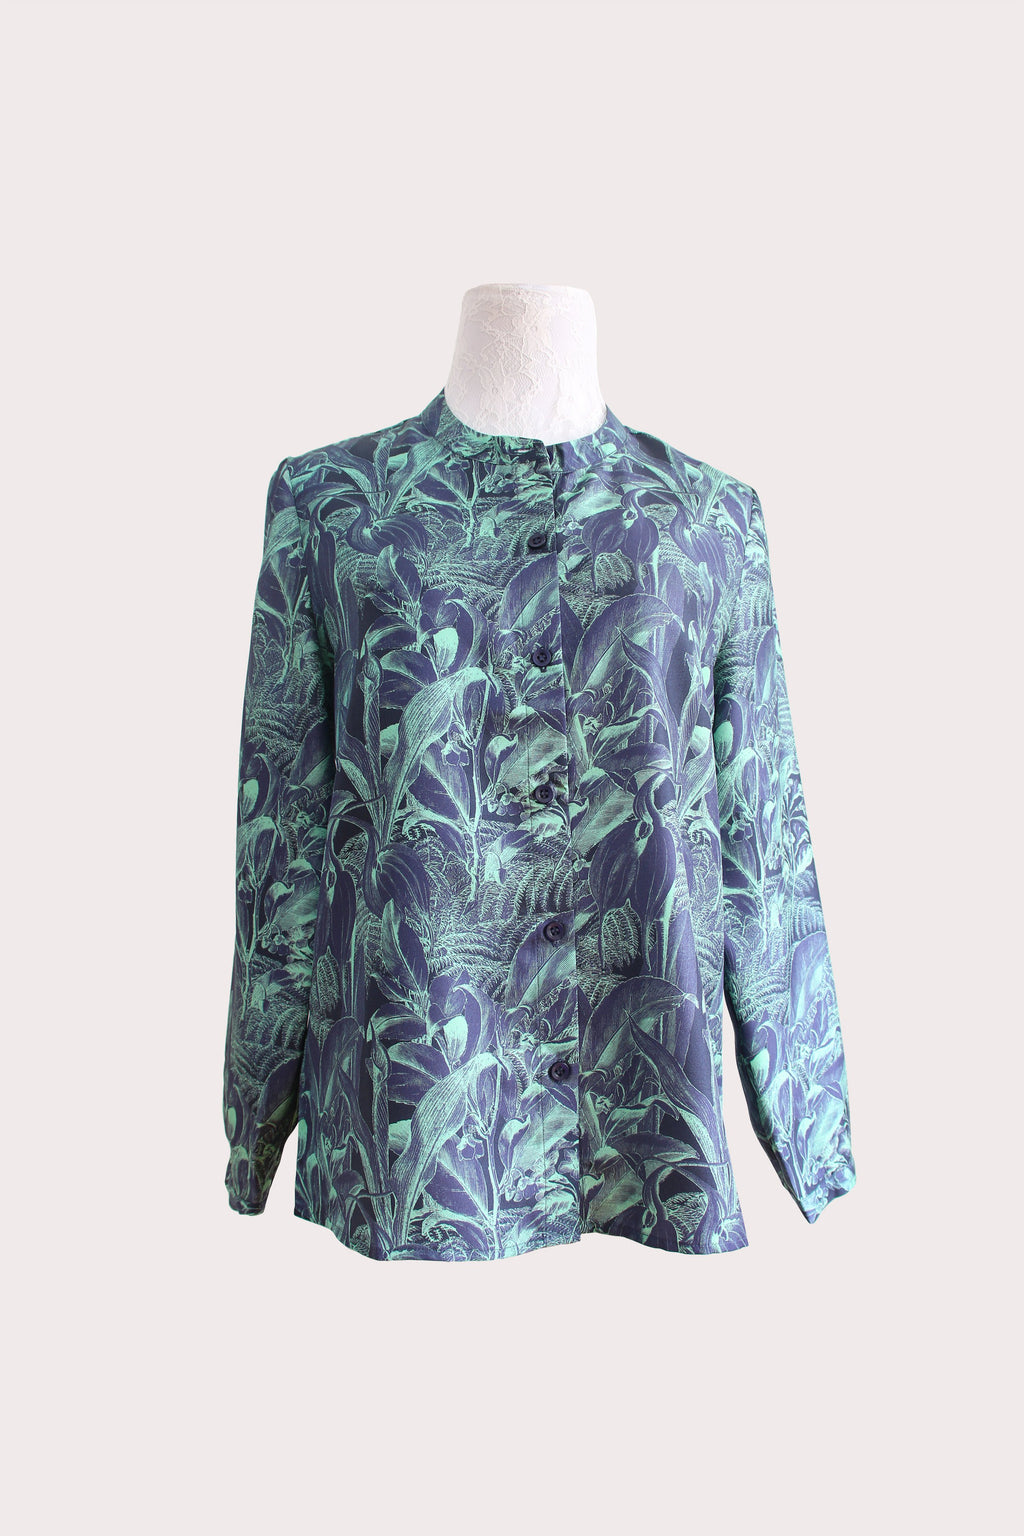 Katyusha Sage Flowers classic blouse